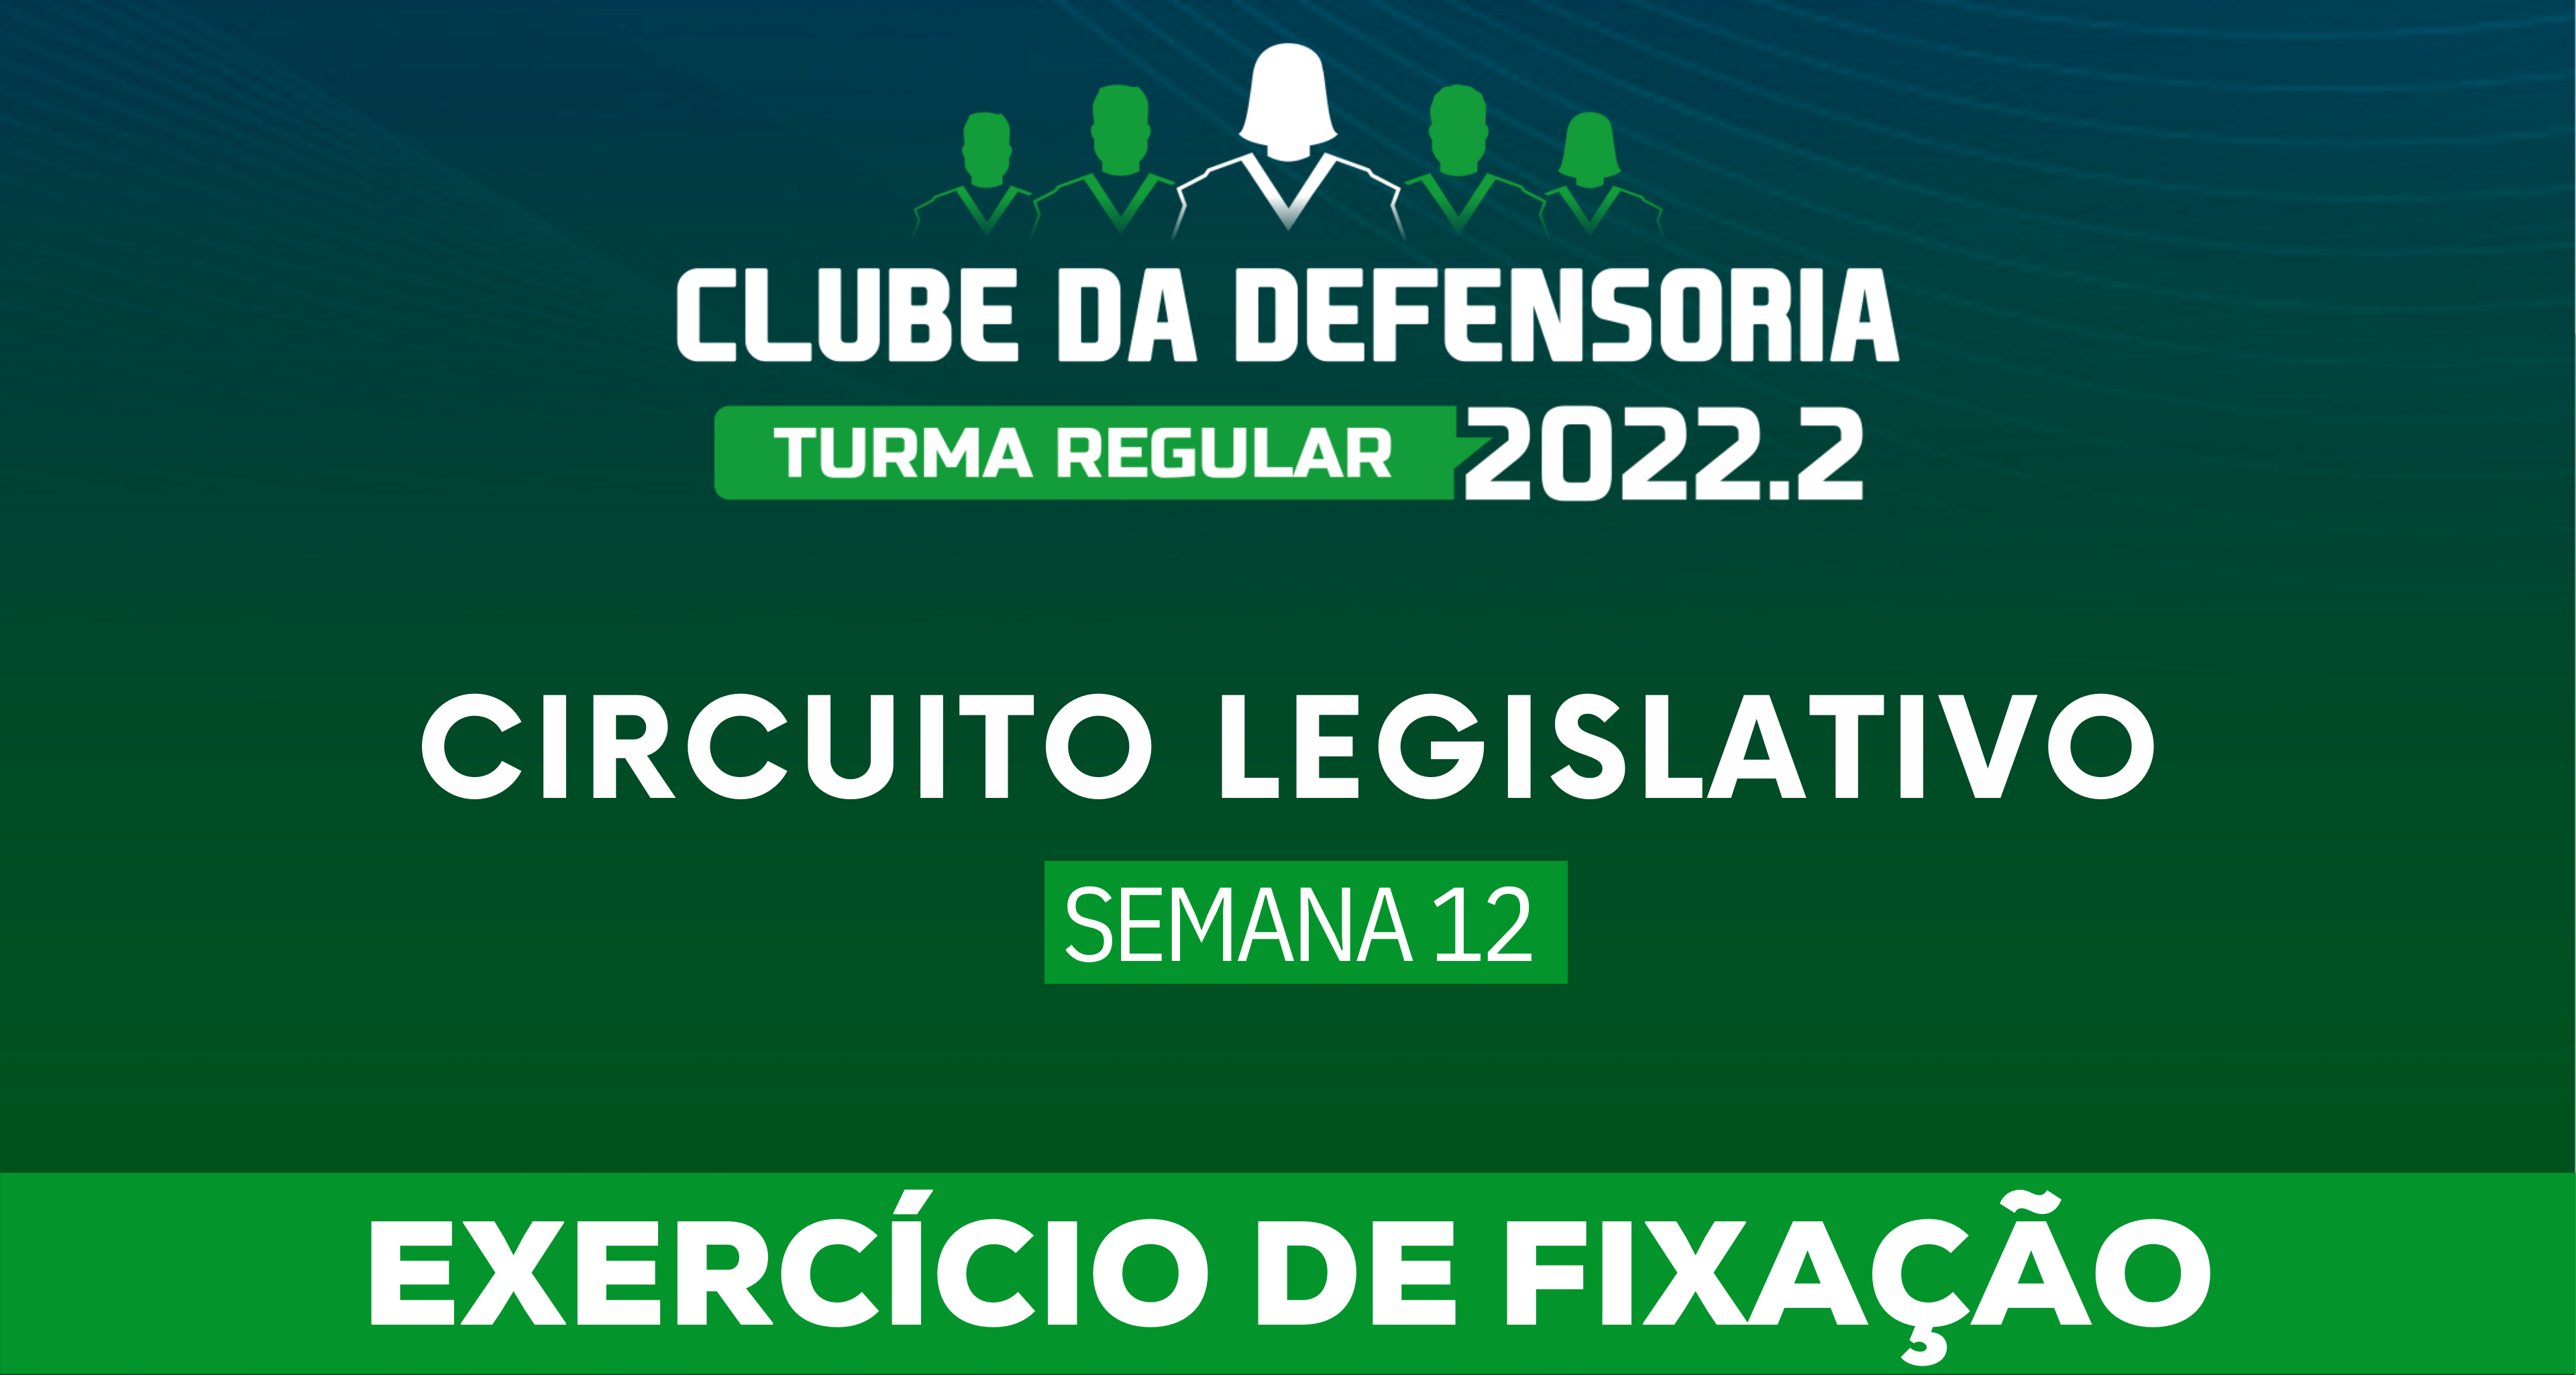 Circuito Legislativo 2022.2 (Clube da Defensoria - Semana 12)